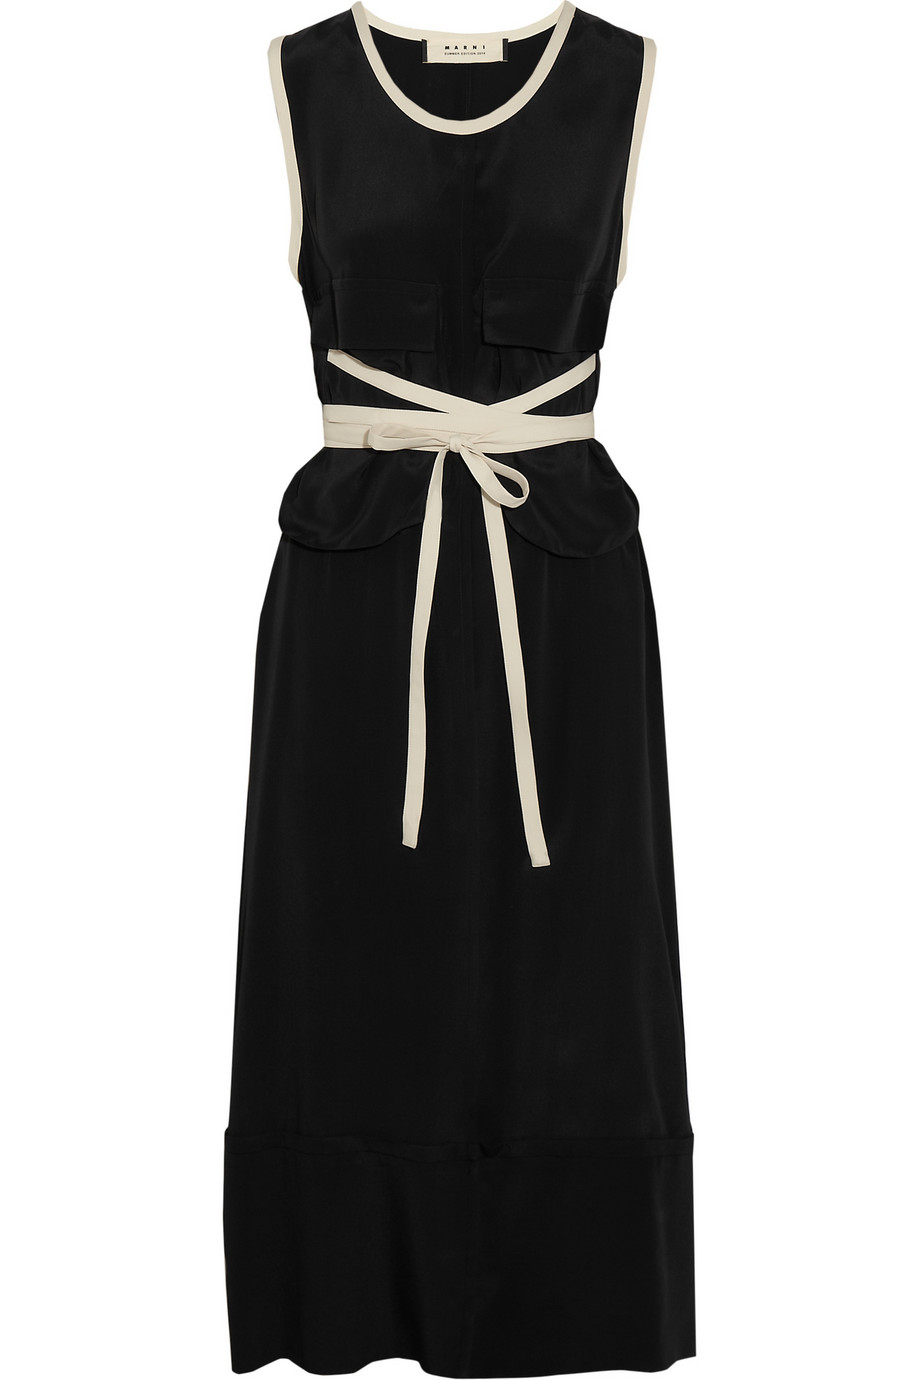 Marni Satin-Jersey Midi Dress in Black | Lyst